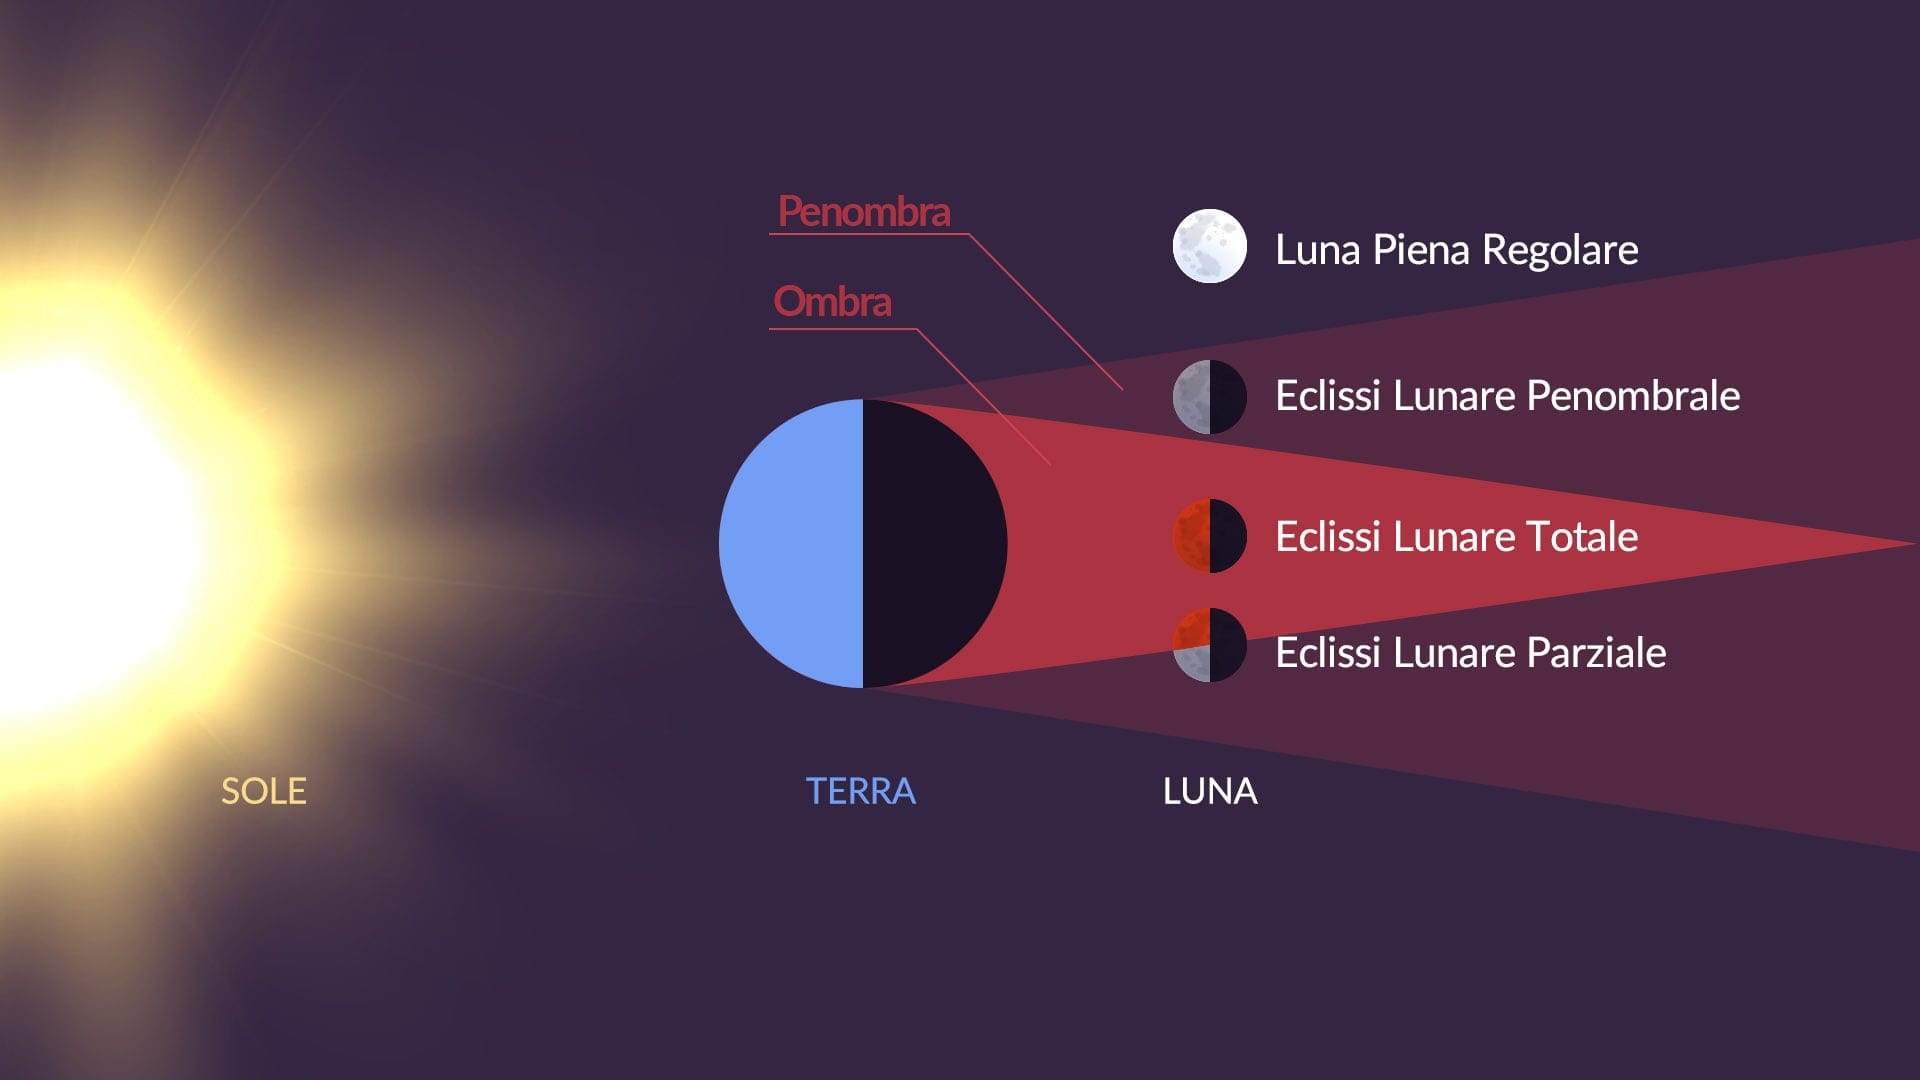 Lunar eclipse types